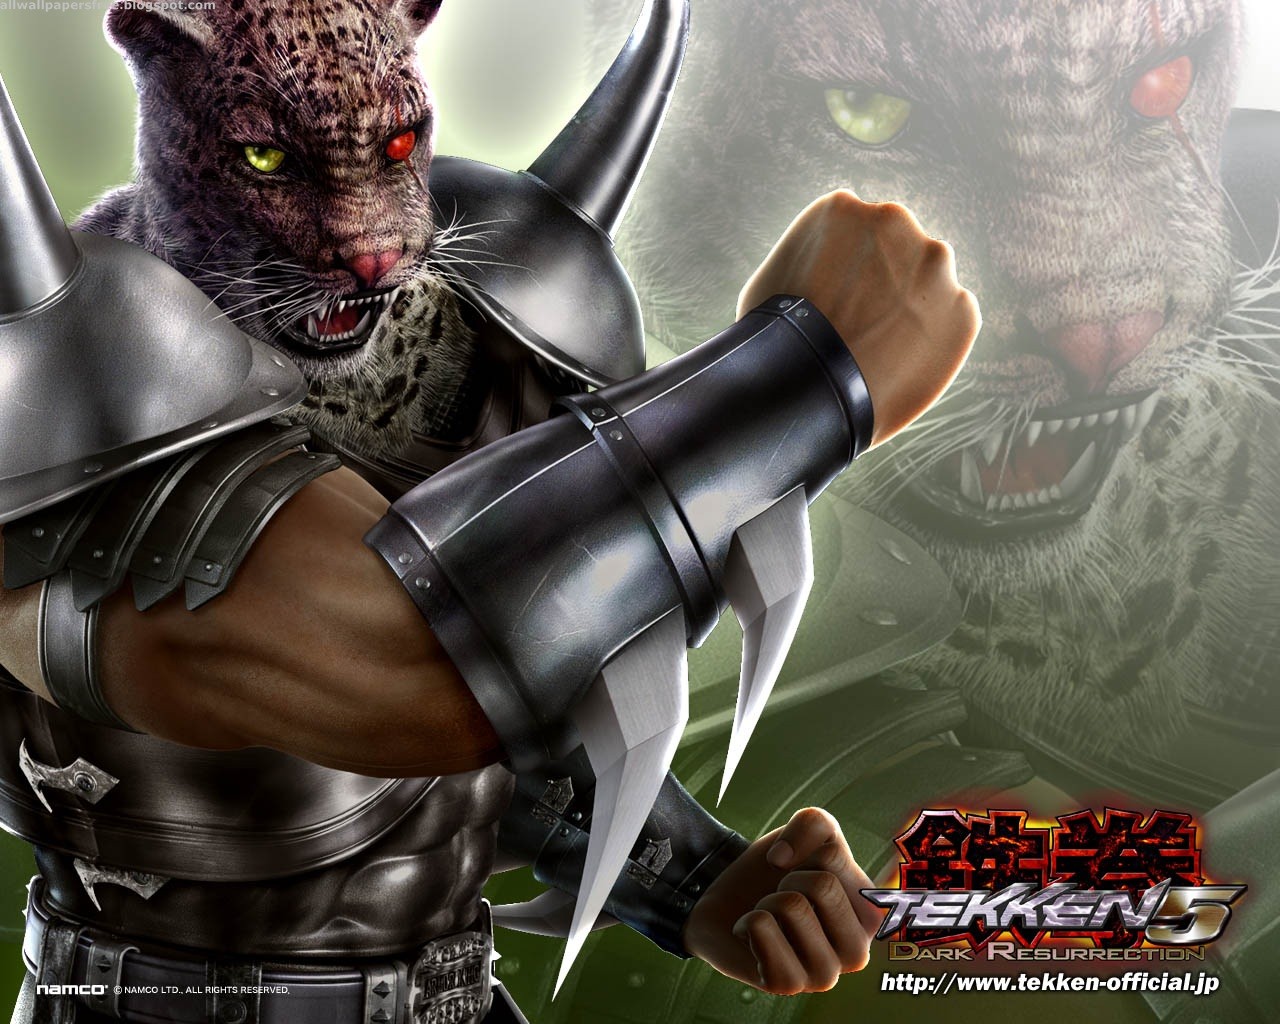 1476185 descargar imagen videojuego, rey de la armadura (tekken), tekken 5: dark resurrection: fondos de pantalla y protectores de pantalla gratis